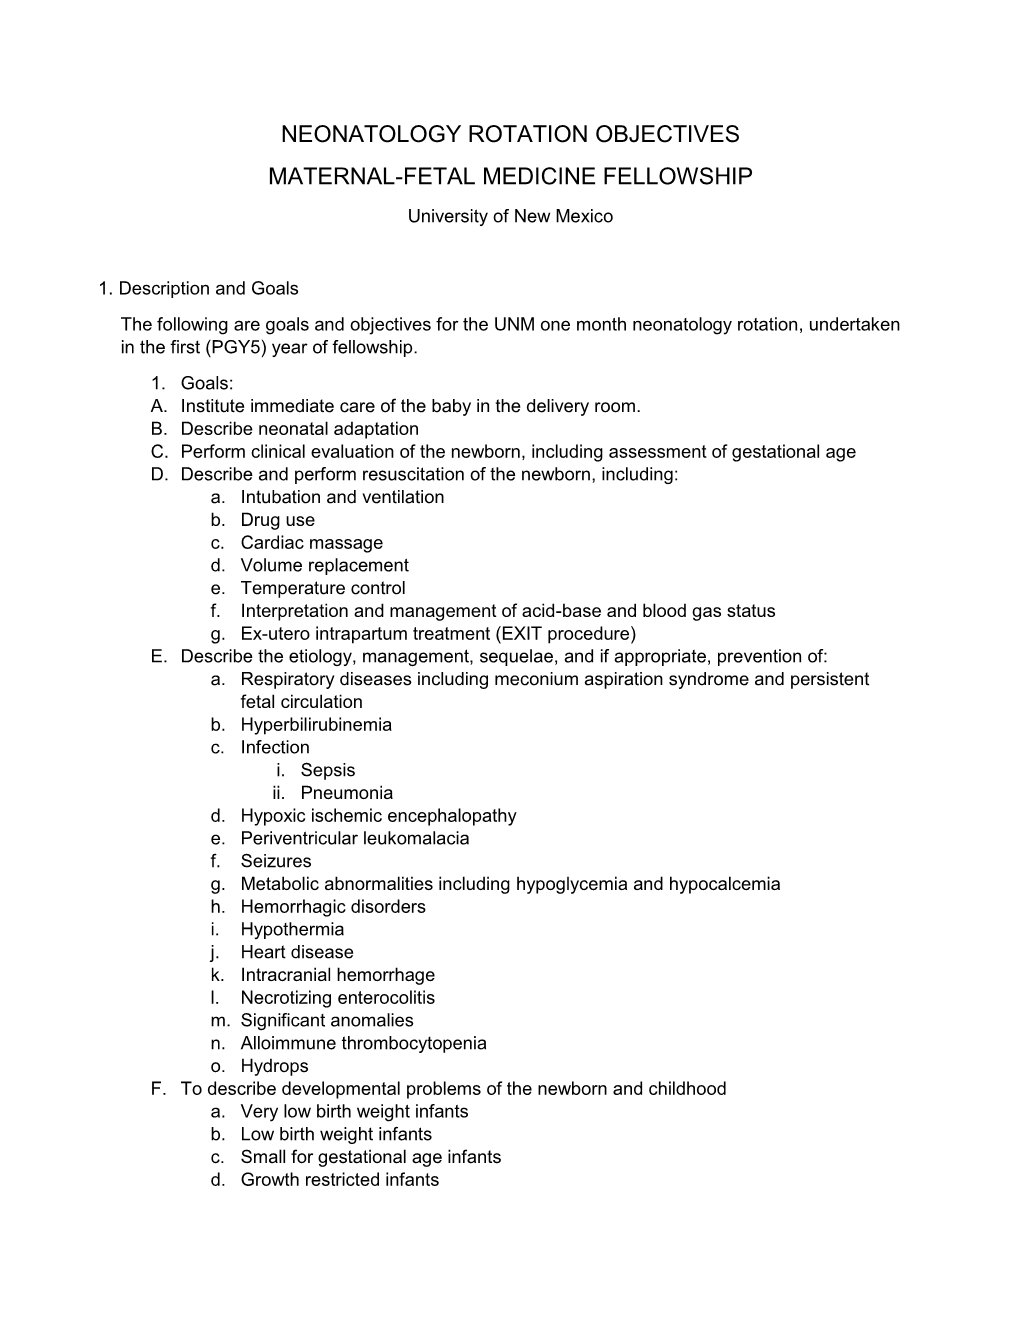 Neonatology Rotation Objectives Maternal-Fetal Medicine Fellowship